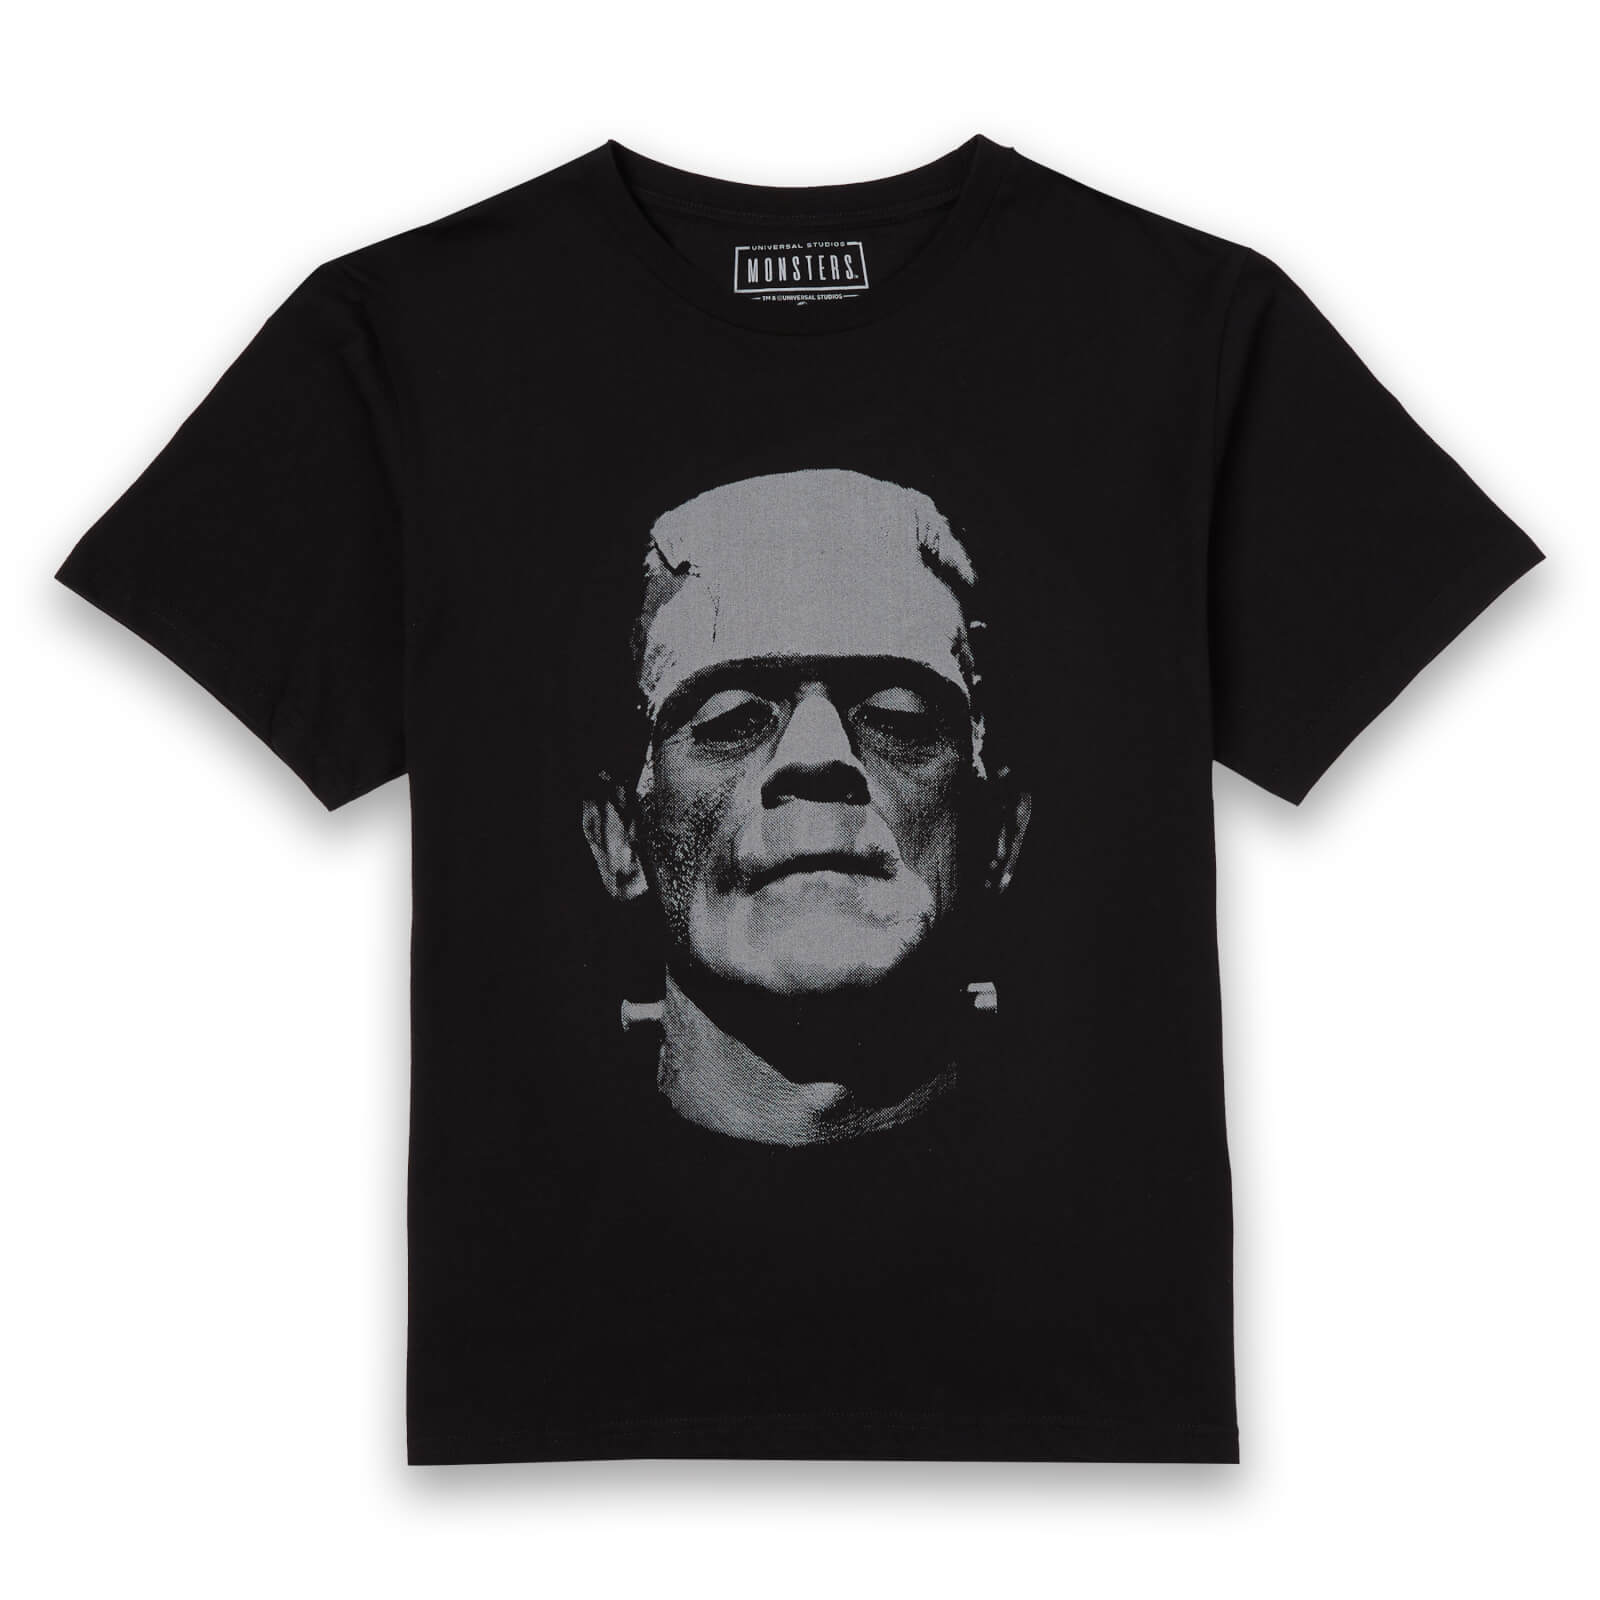 Universal Monsters Frankenstein Black and White Men's T-Shirt - Black - XS